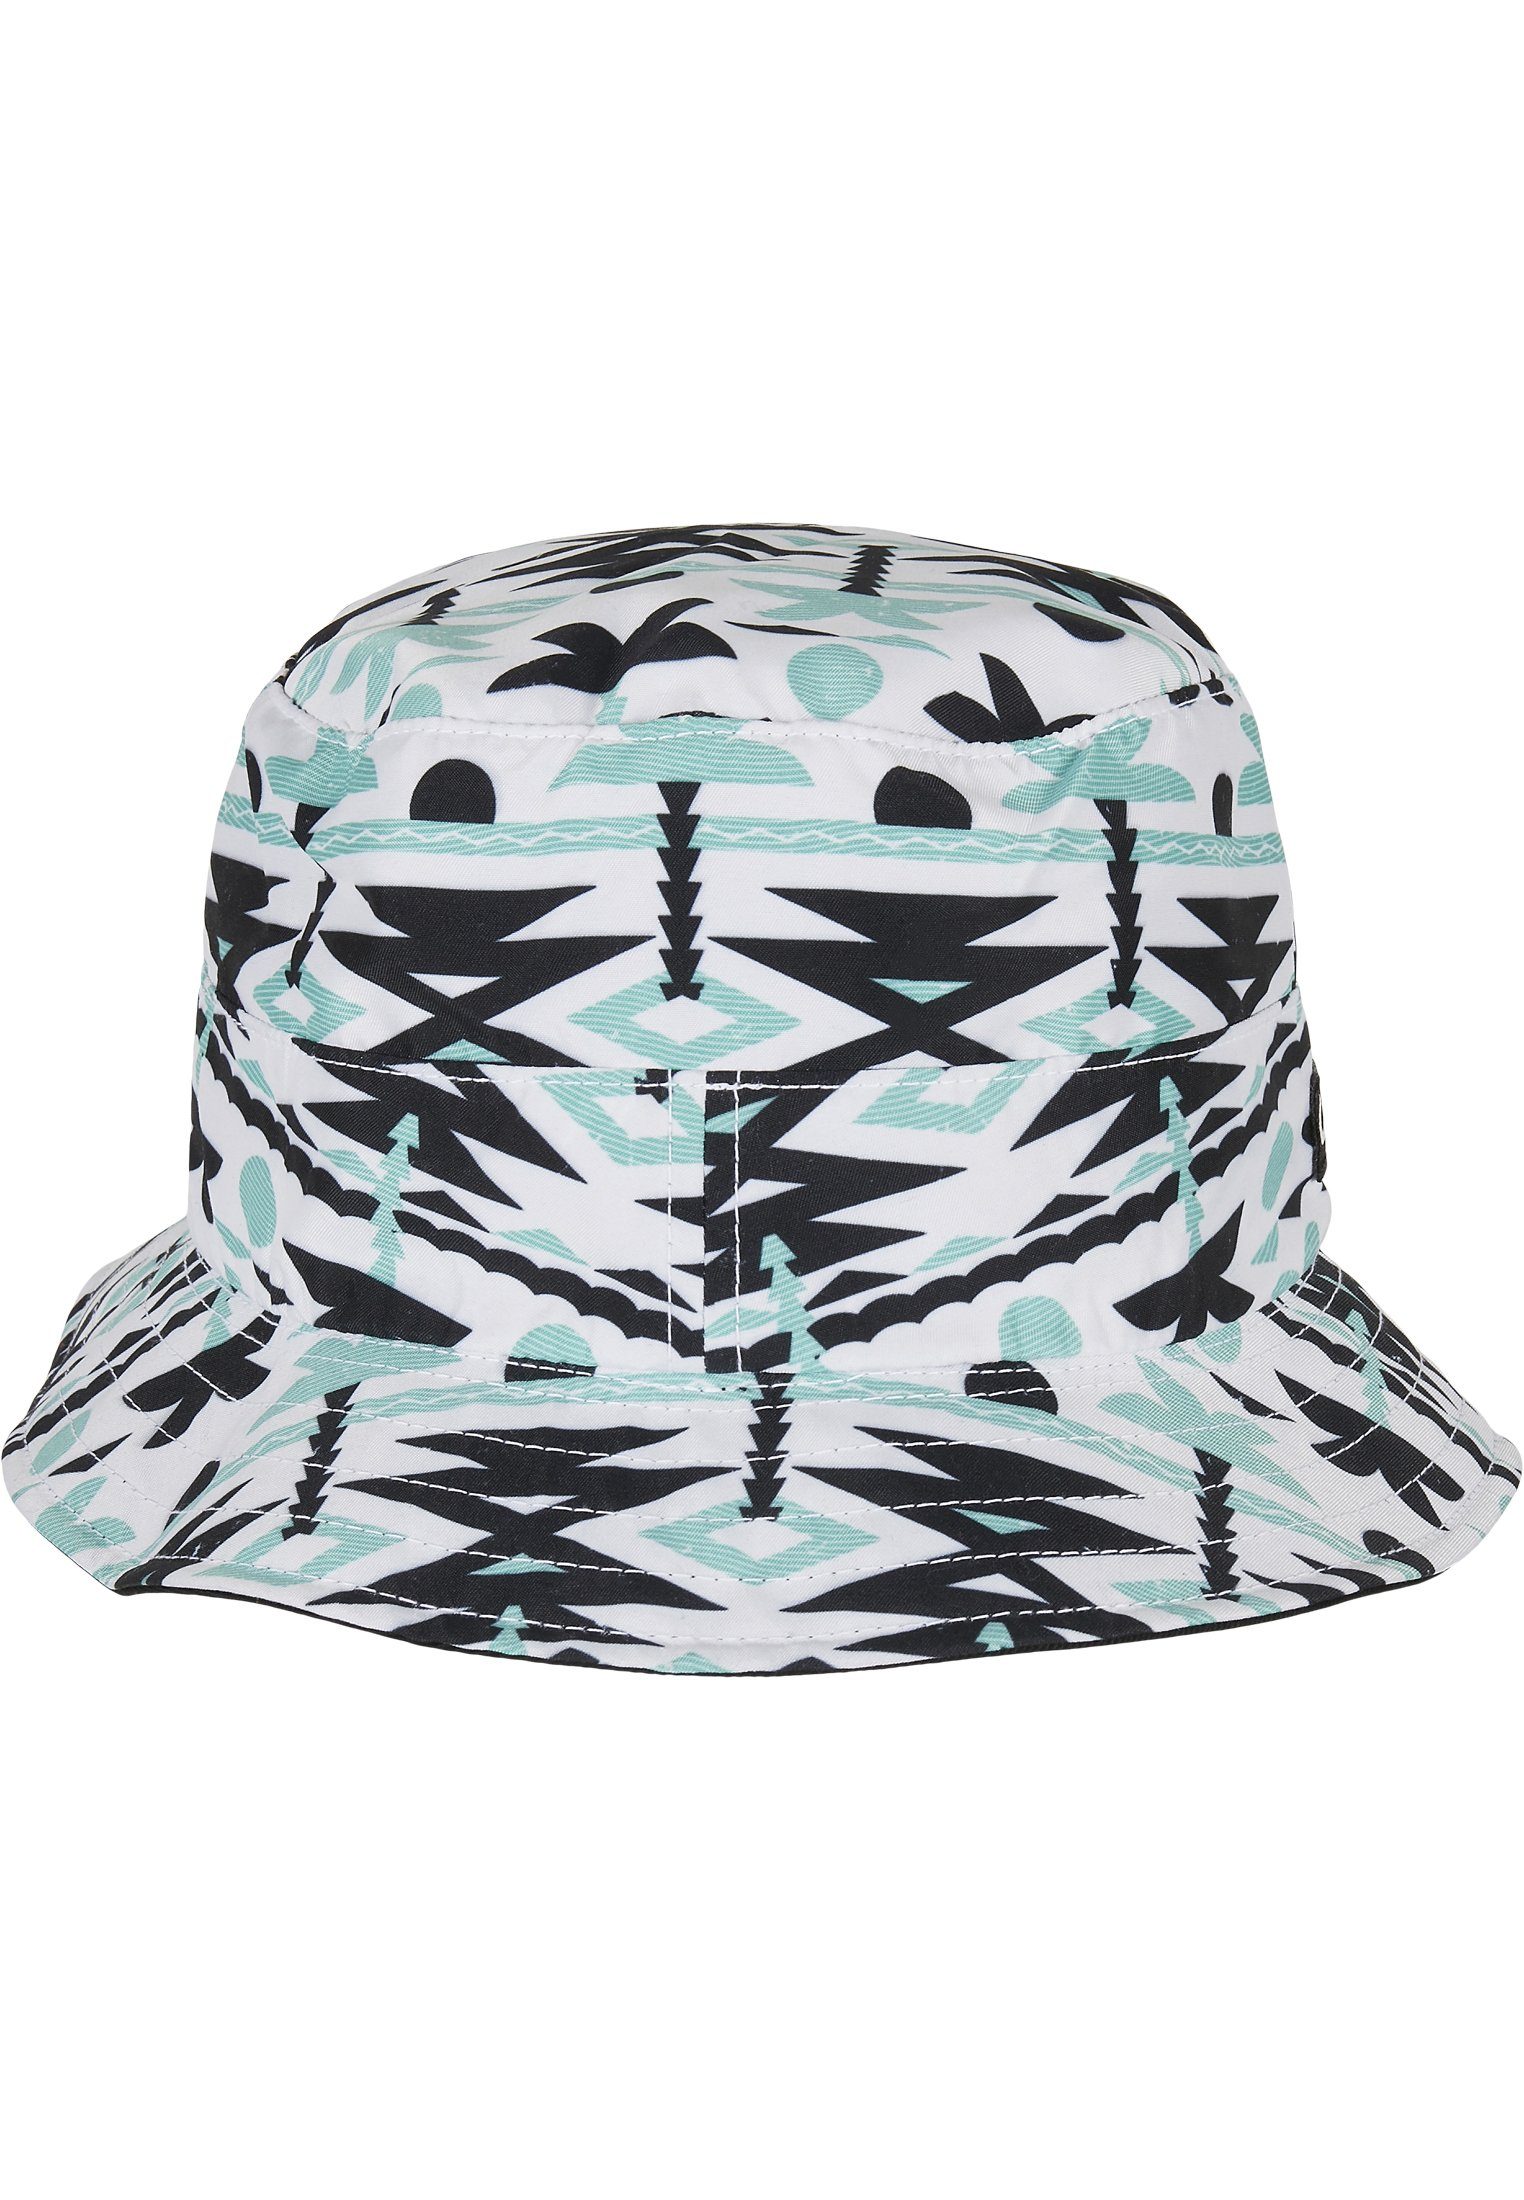 Aztec SONS Summer Hat Bucket Flex Cap Reversible C&S & WL CAYLER